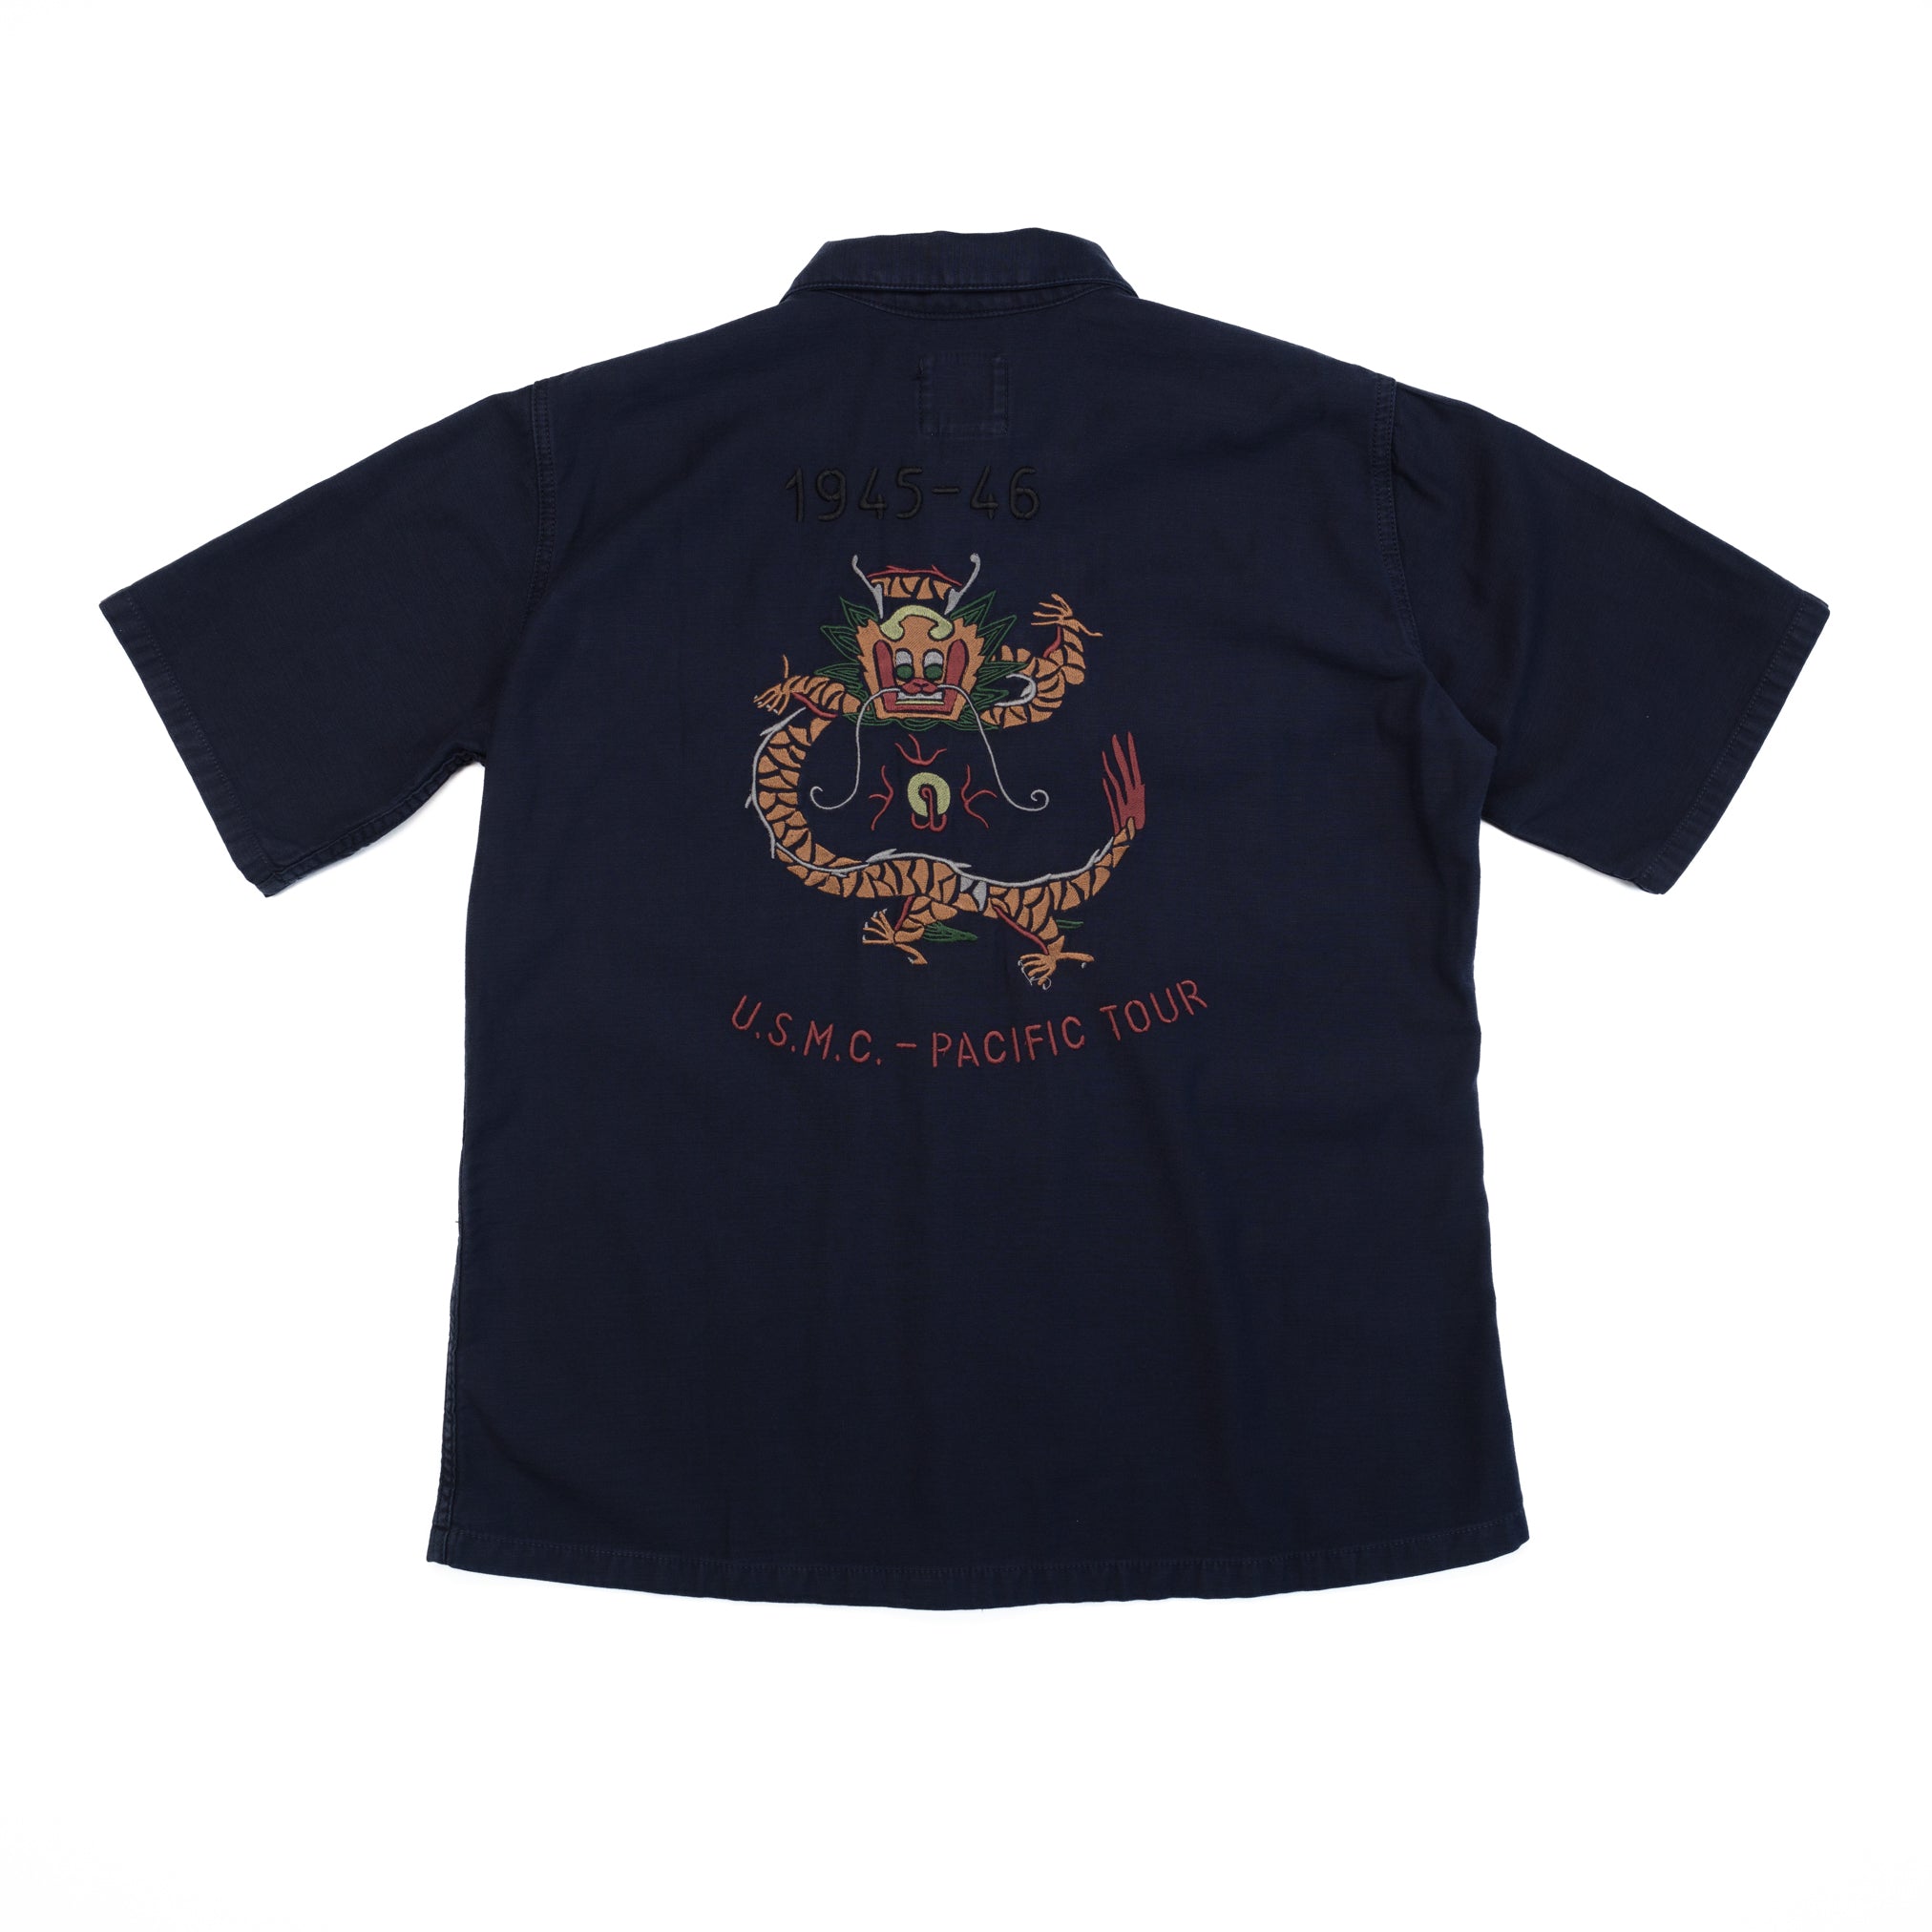 Sbury Ltd Edition Shirt in Navy Slub